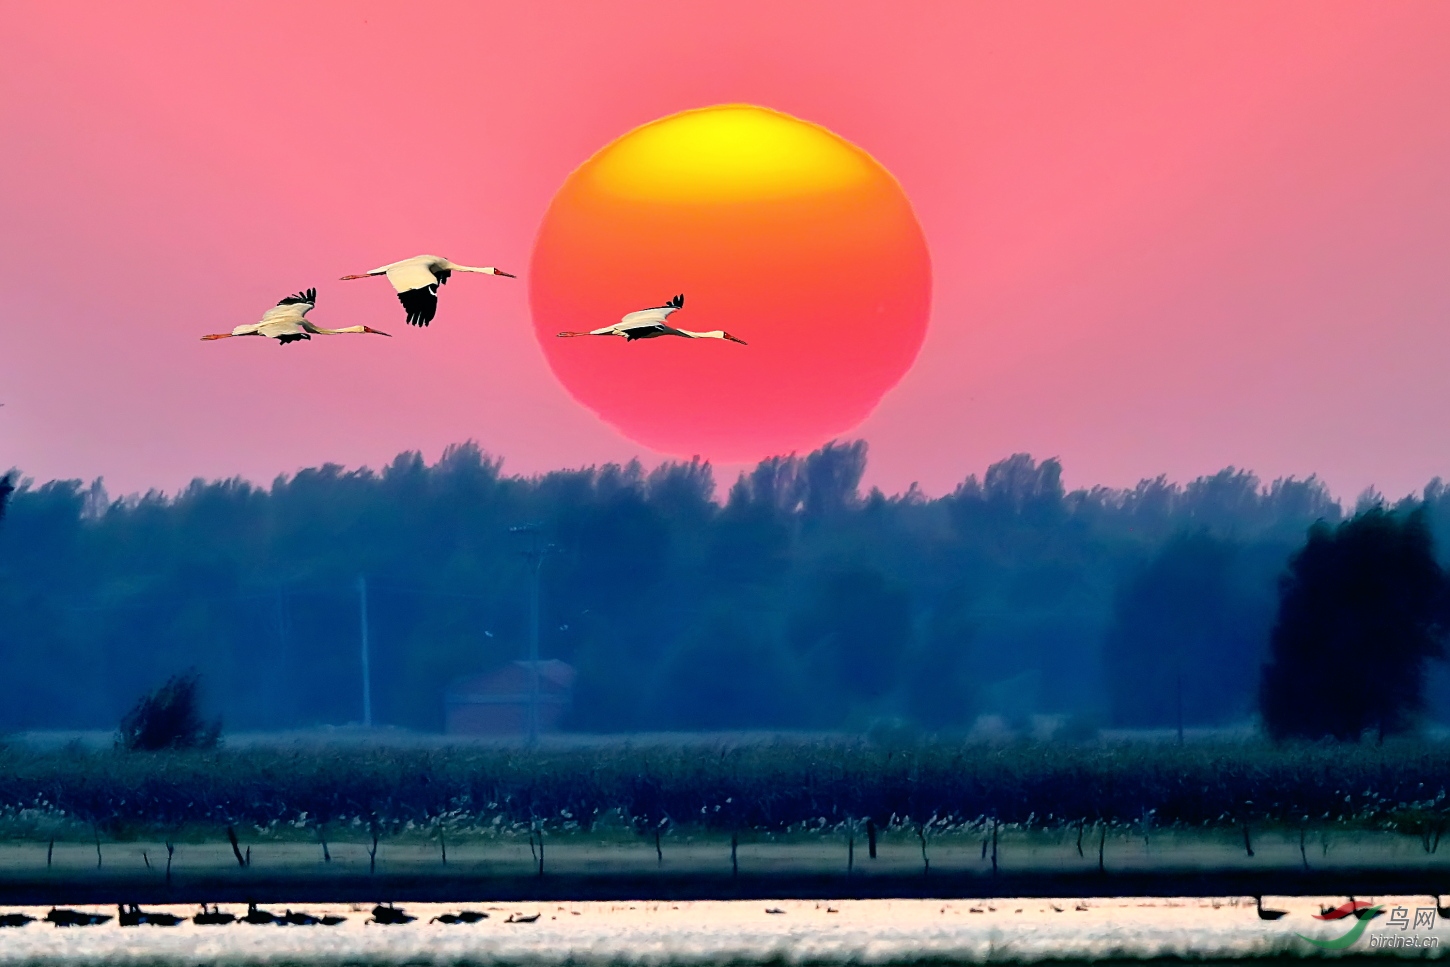 仙鹤飞向太阳的图片图片